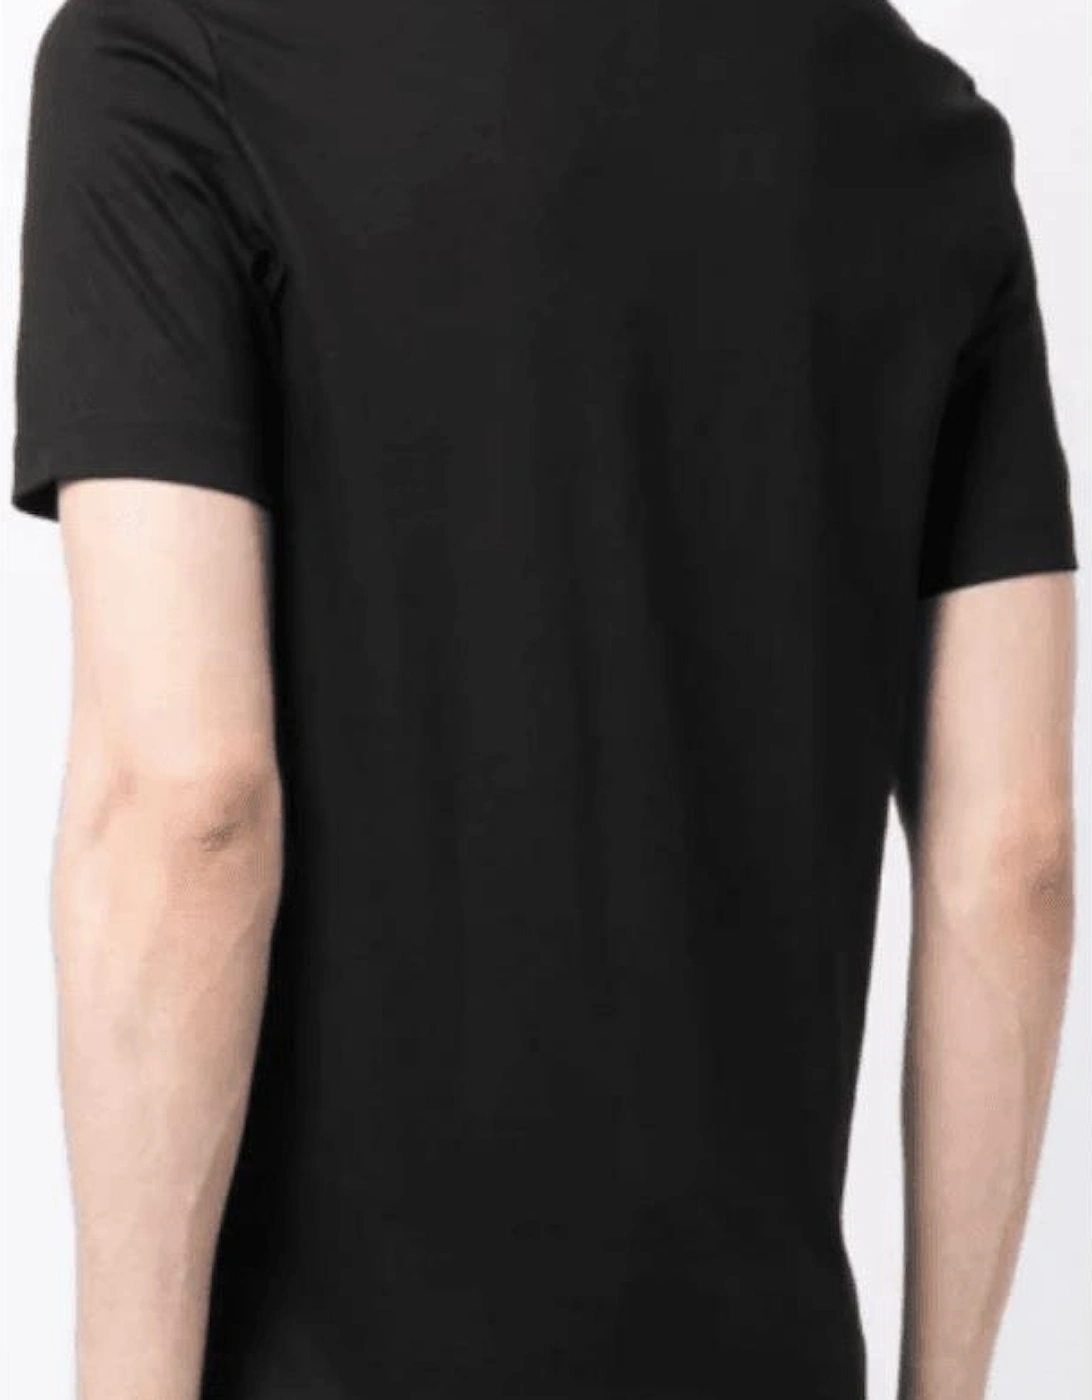 Tilburt 278 Cotton Rubberised Logo Black T-Shirt